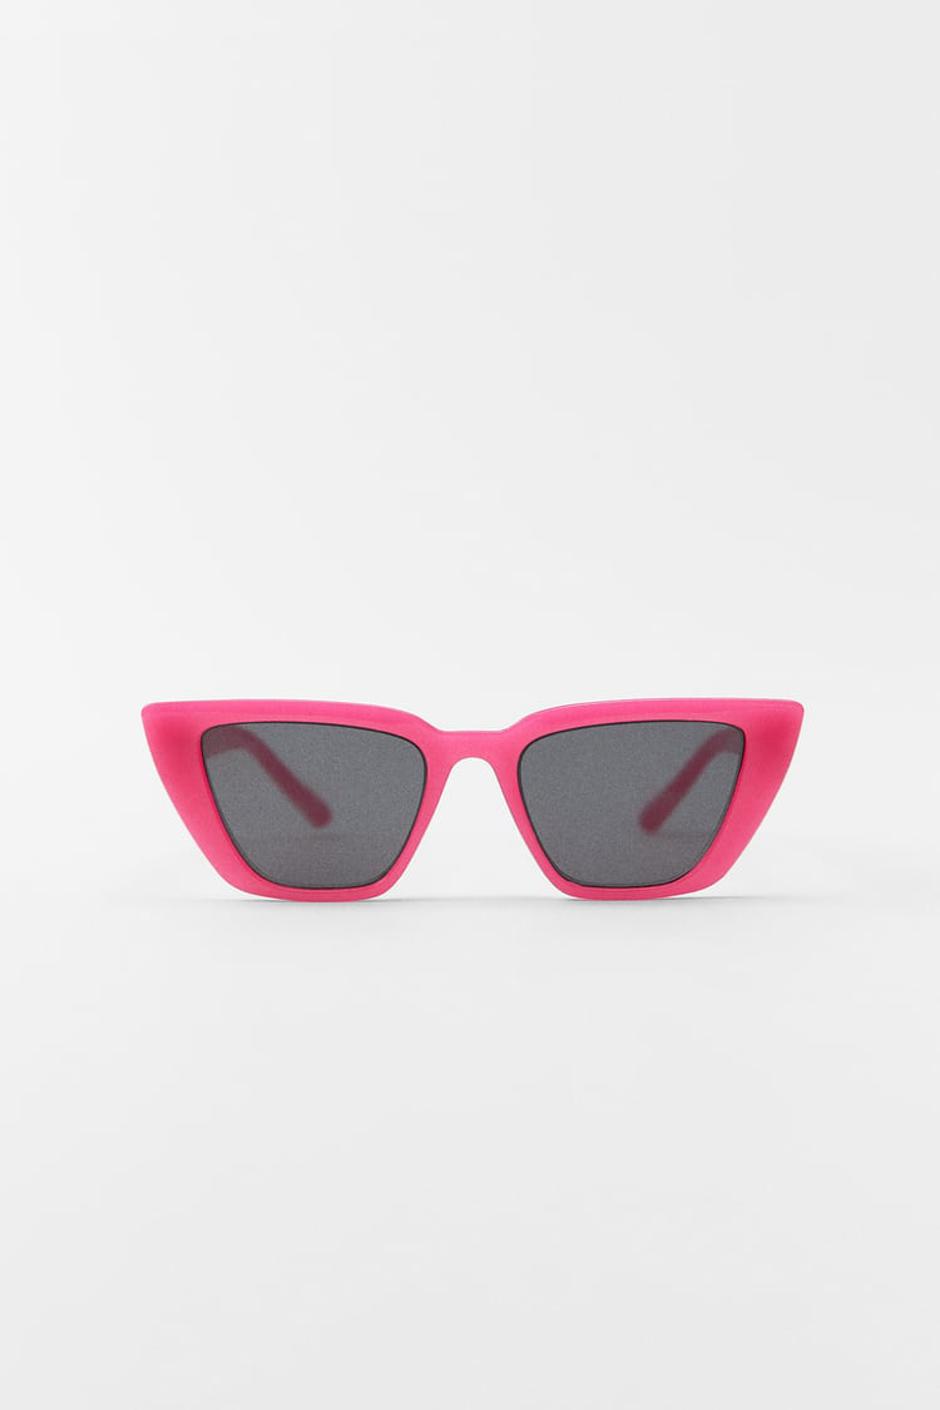 sunčane naočale trendovi | Autor: Zara